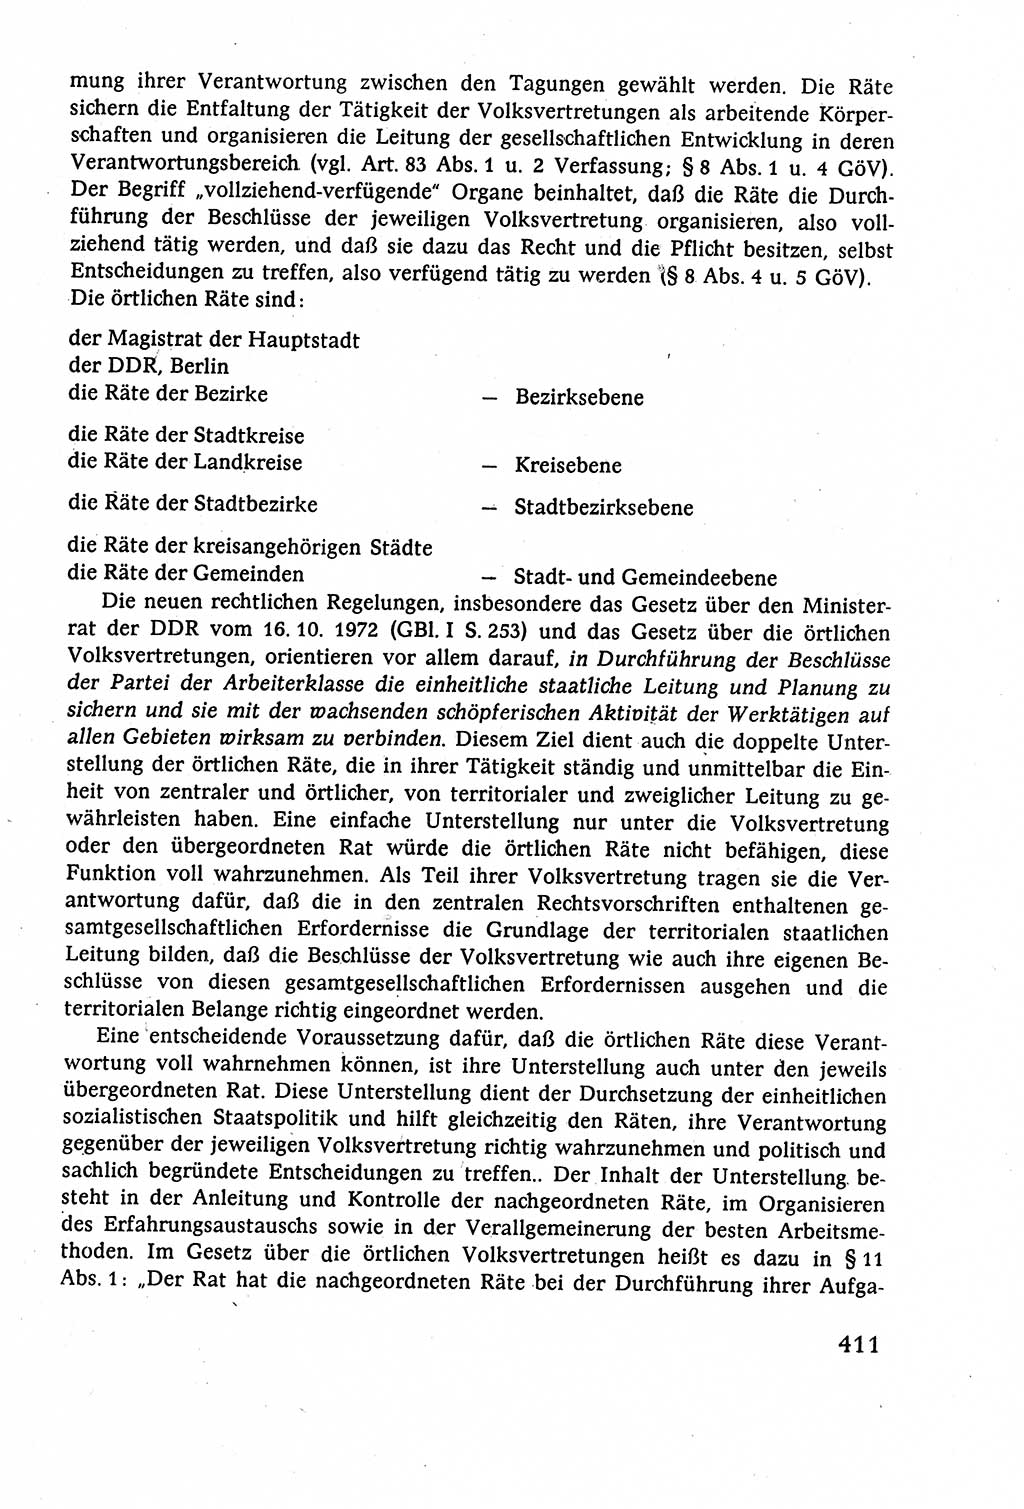 Staatsrecht der DDR (Deutsche Demokratische Republik), Lehrbuch 1977, Seite 411 (St.-R. DDR Lb. 1977, S. 411)